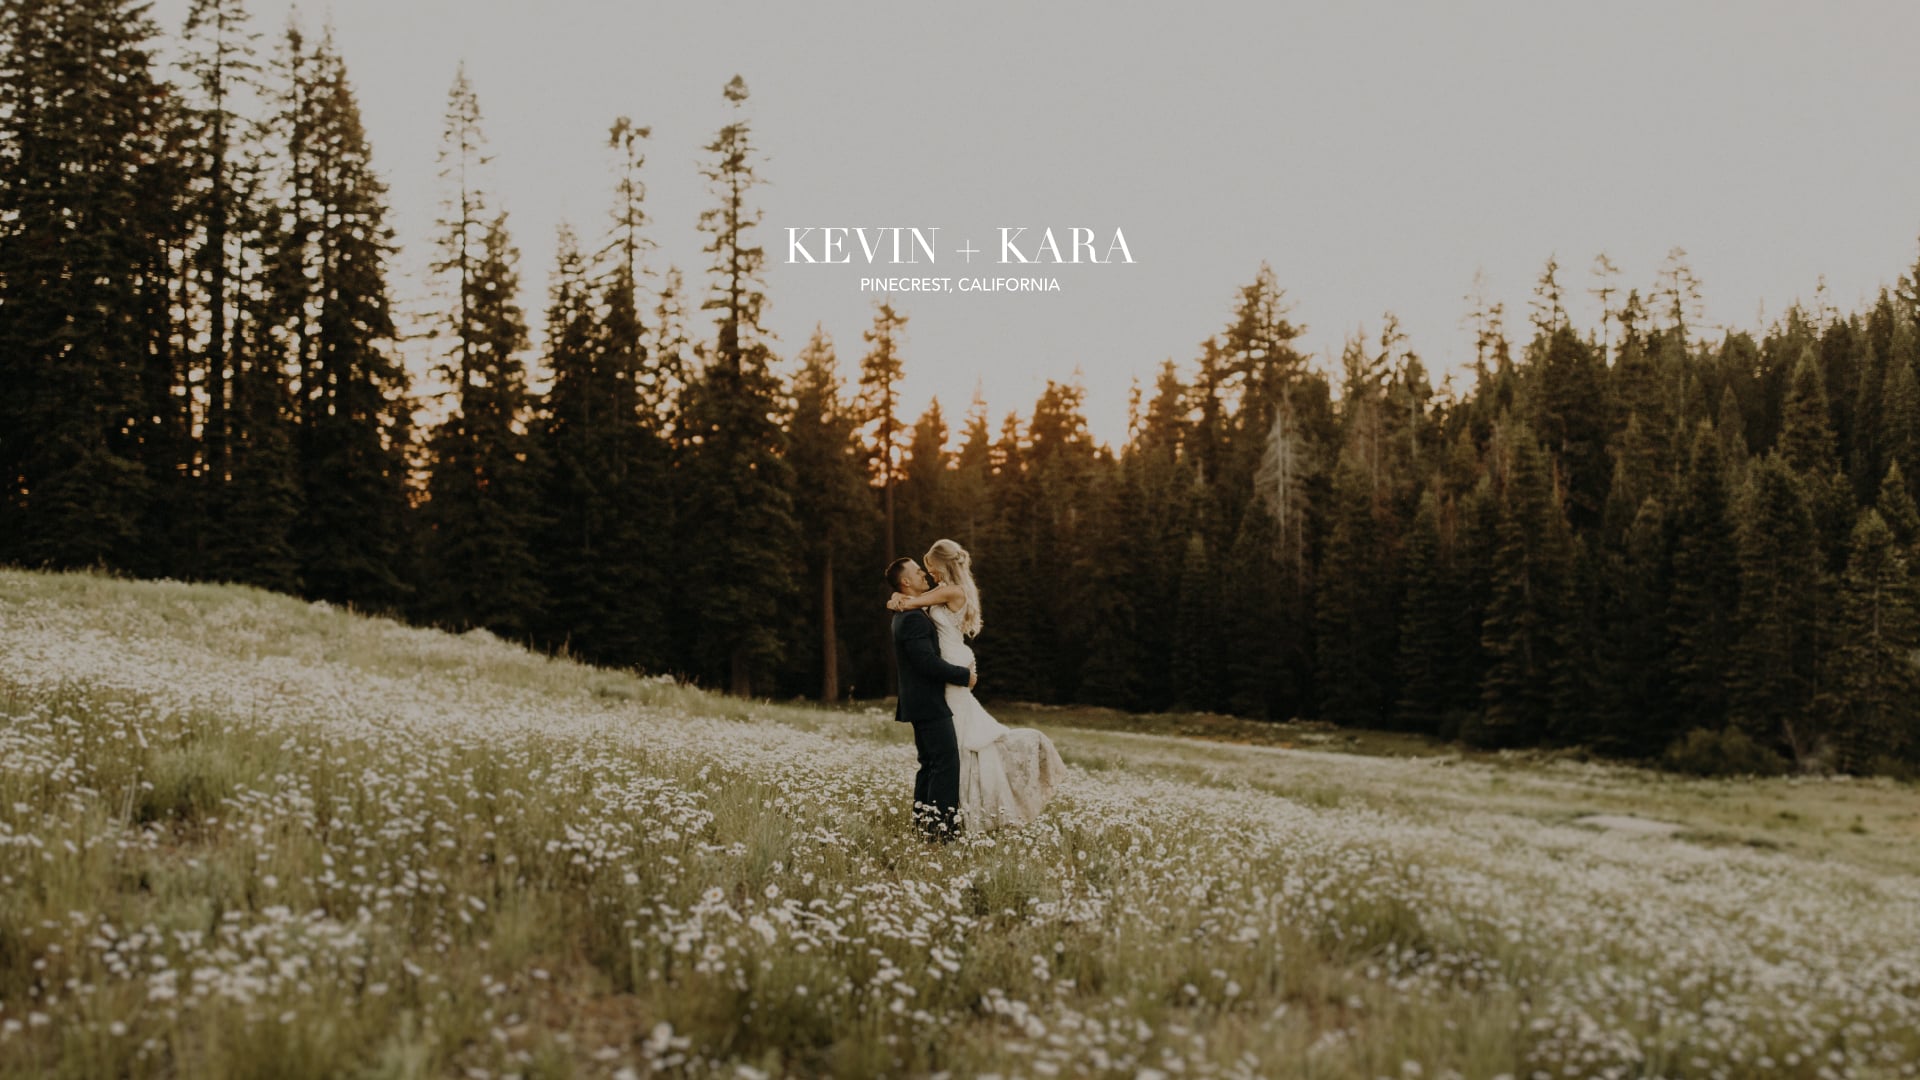 Highlight Film: Kara & Kevin, Pinecrest California